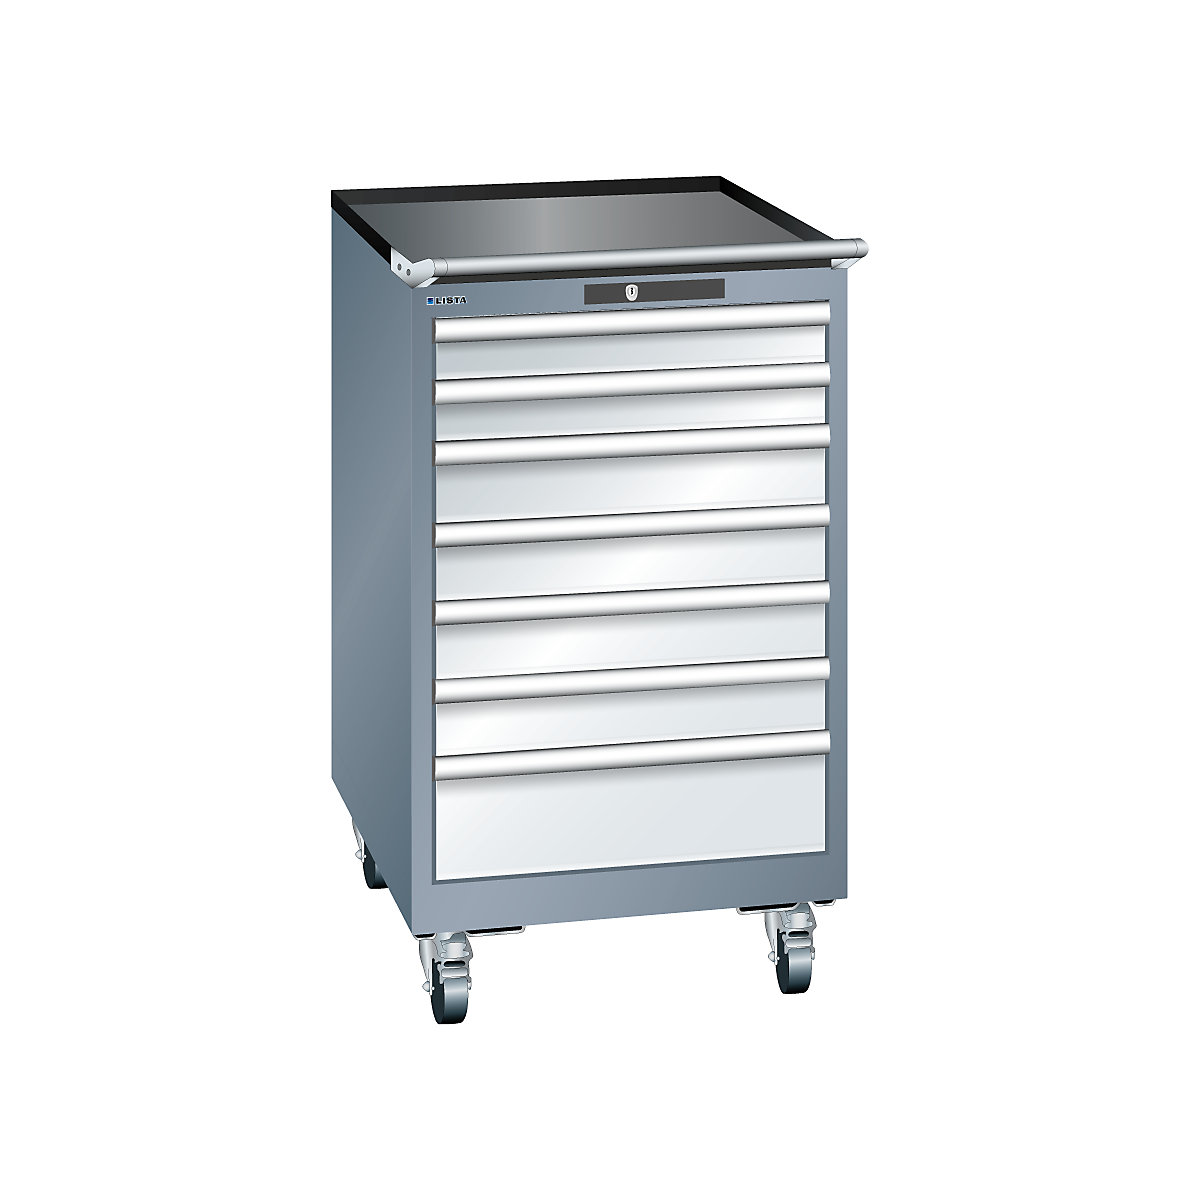 LISTA – Armoire à tiroirs en tôle d'acier, h x l 990 x 564 mm, 7 tiroirs, mobile, gris métallisé / gris clair